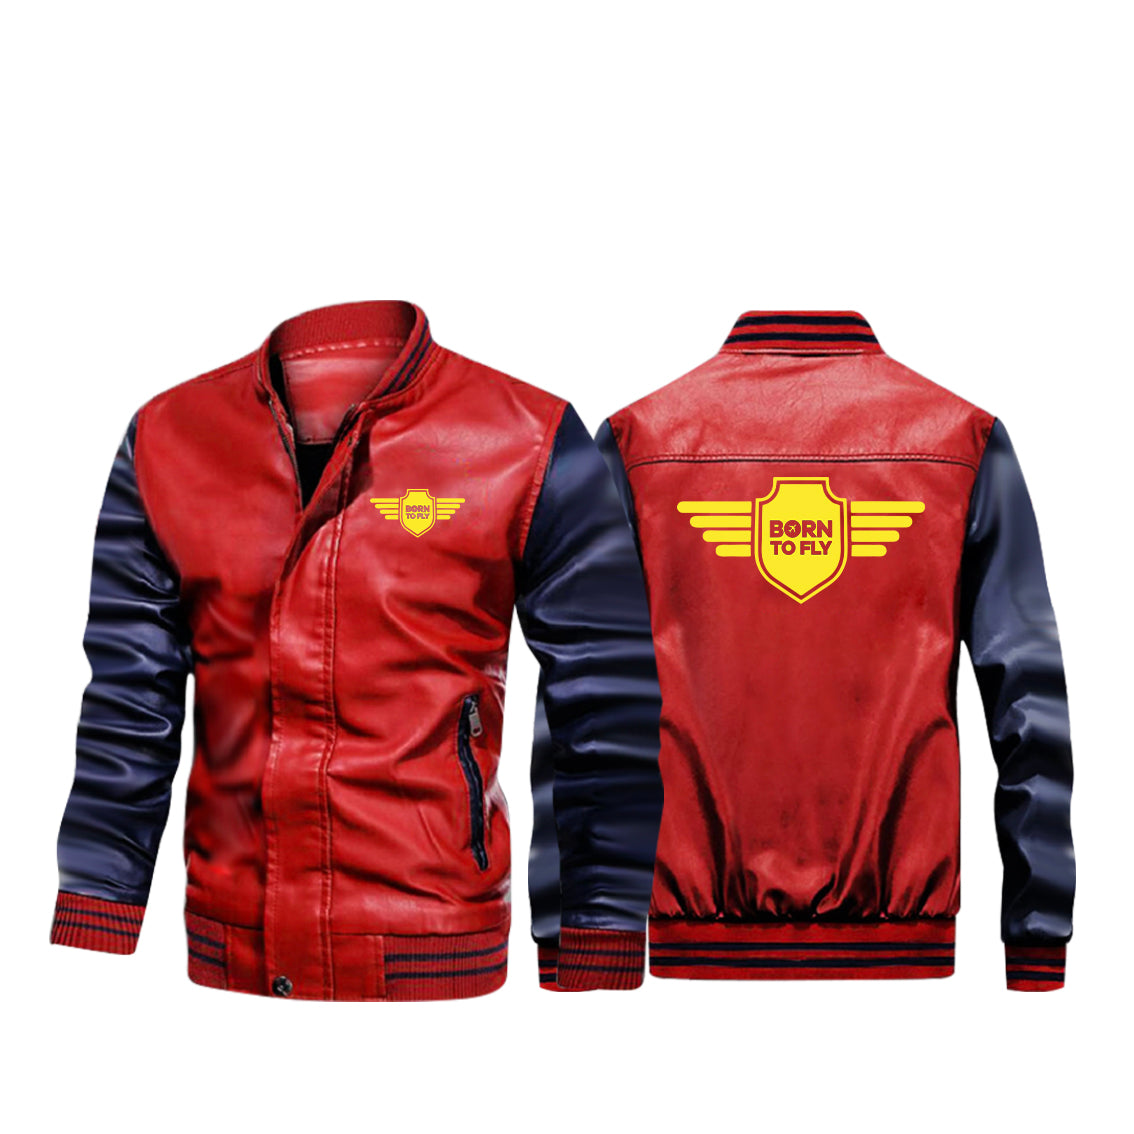 Born To Fly & Badge Designed Stylish Leather Bomber Jackets